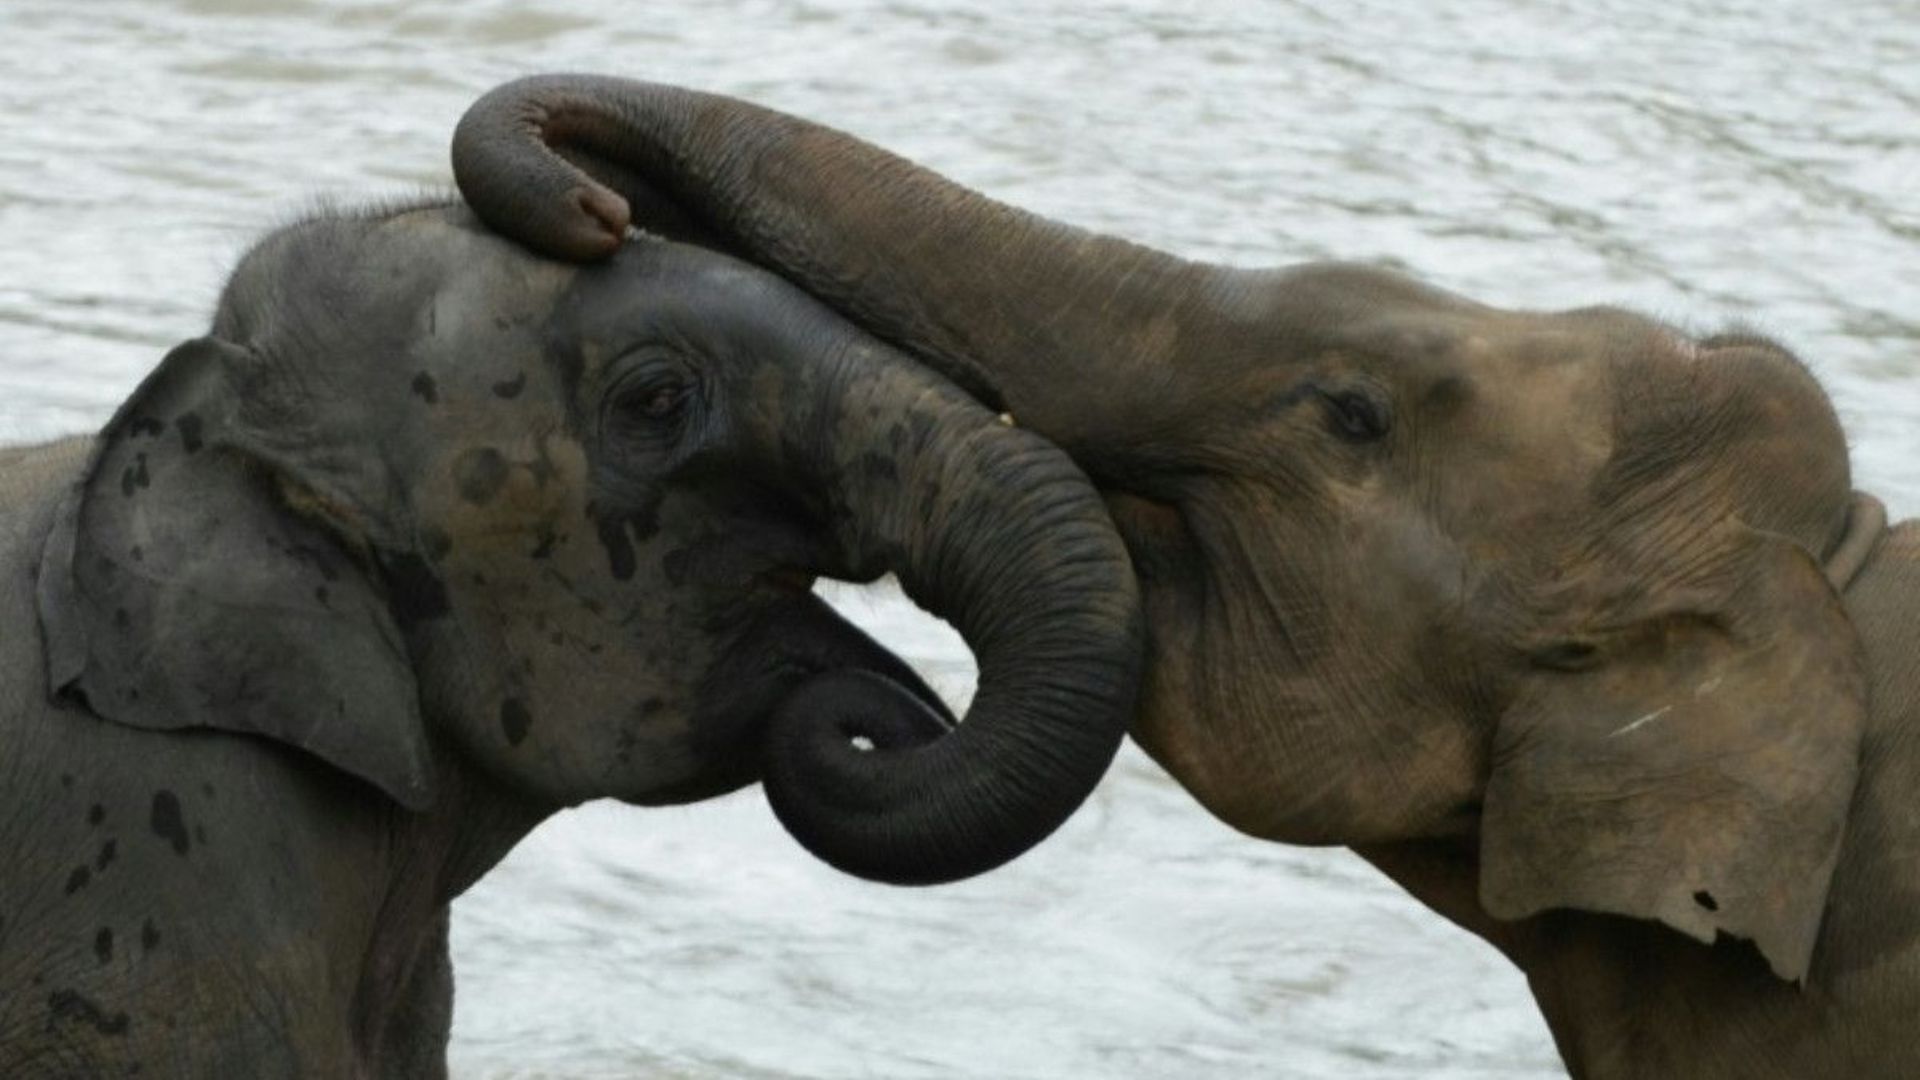 au-sri-lanka-le-confinement-a-offert-un-repit-aux-elephants-menaces